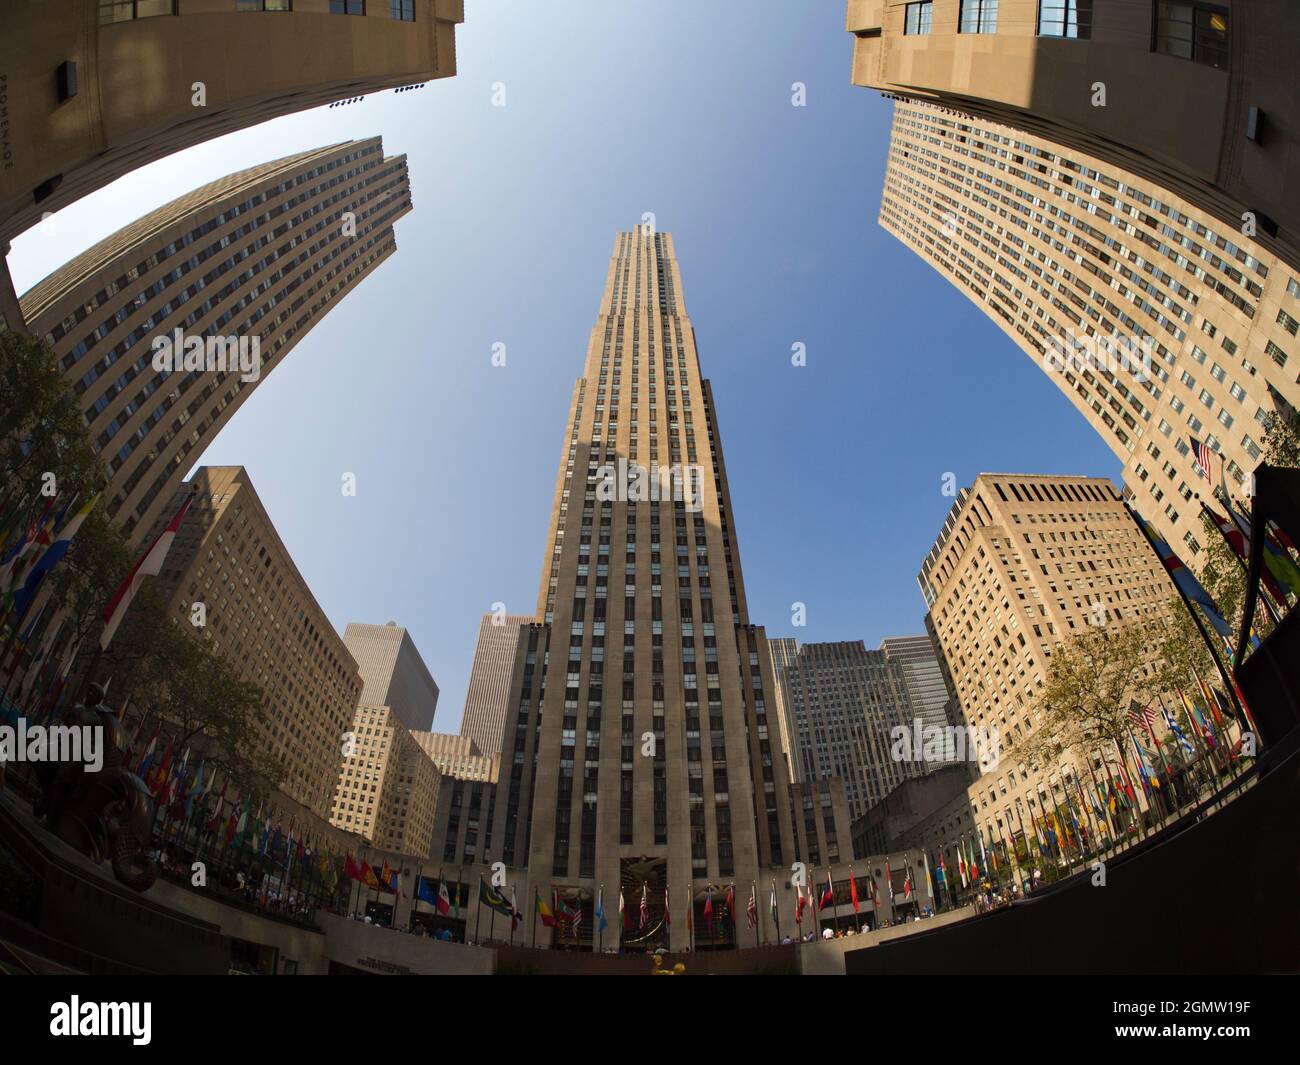 New York, Etats-Unis - 11 avril 2013; pas de personnes en vue. Le Rockefeller Center est un grand complexe de coms, un élément emblématique de l'architecture grandiose de New York Banque D'Images